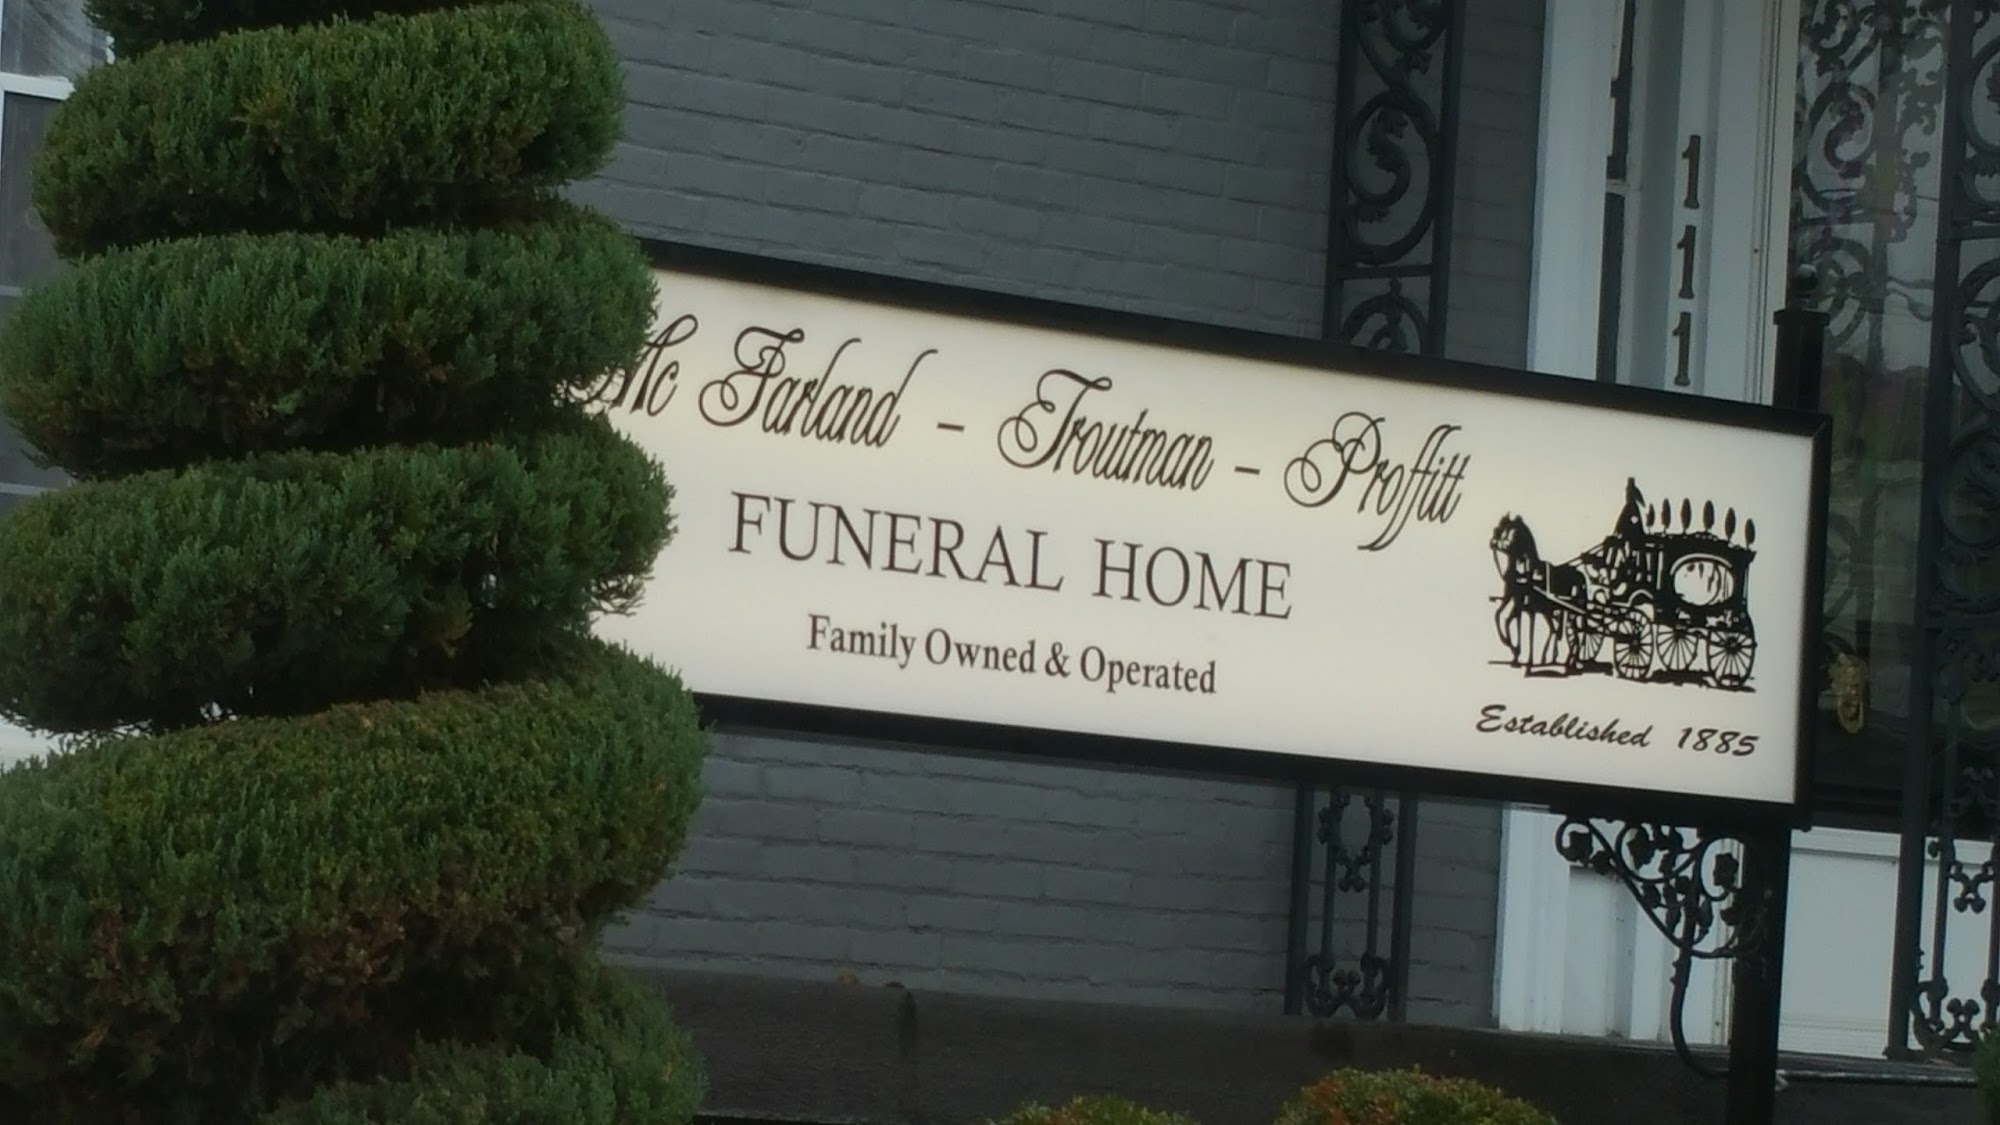 McFarland-Troutman-Proffitt Funeral Home 111 N Bardstown Rd, Mt Washington Kentucky 40047